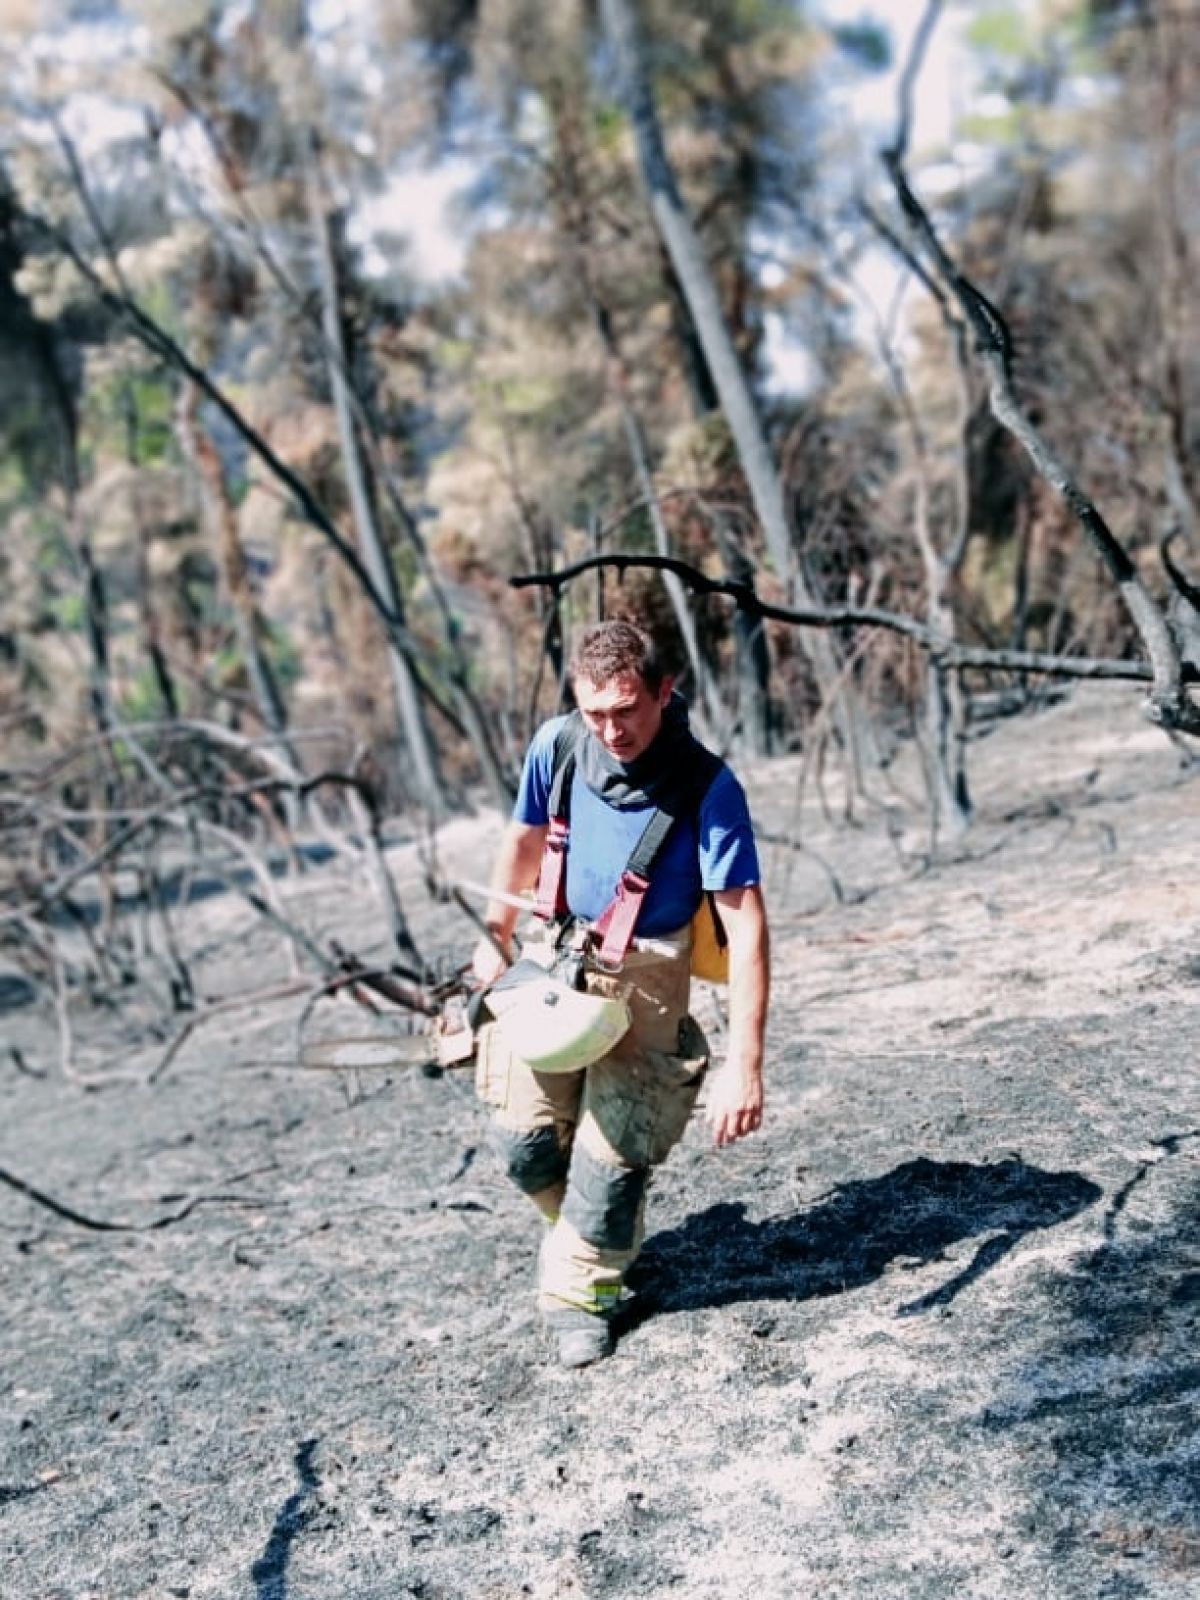 Pompierii din Moldova, în intervenția din Grecia: 260 de focare stinse, de pe 128 de ha de teren în flăcări (GALERIE FOTO)